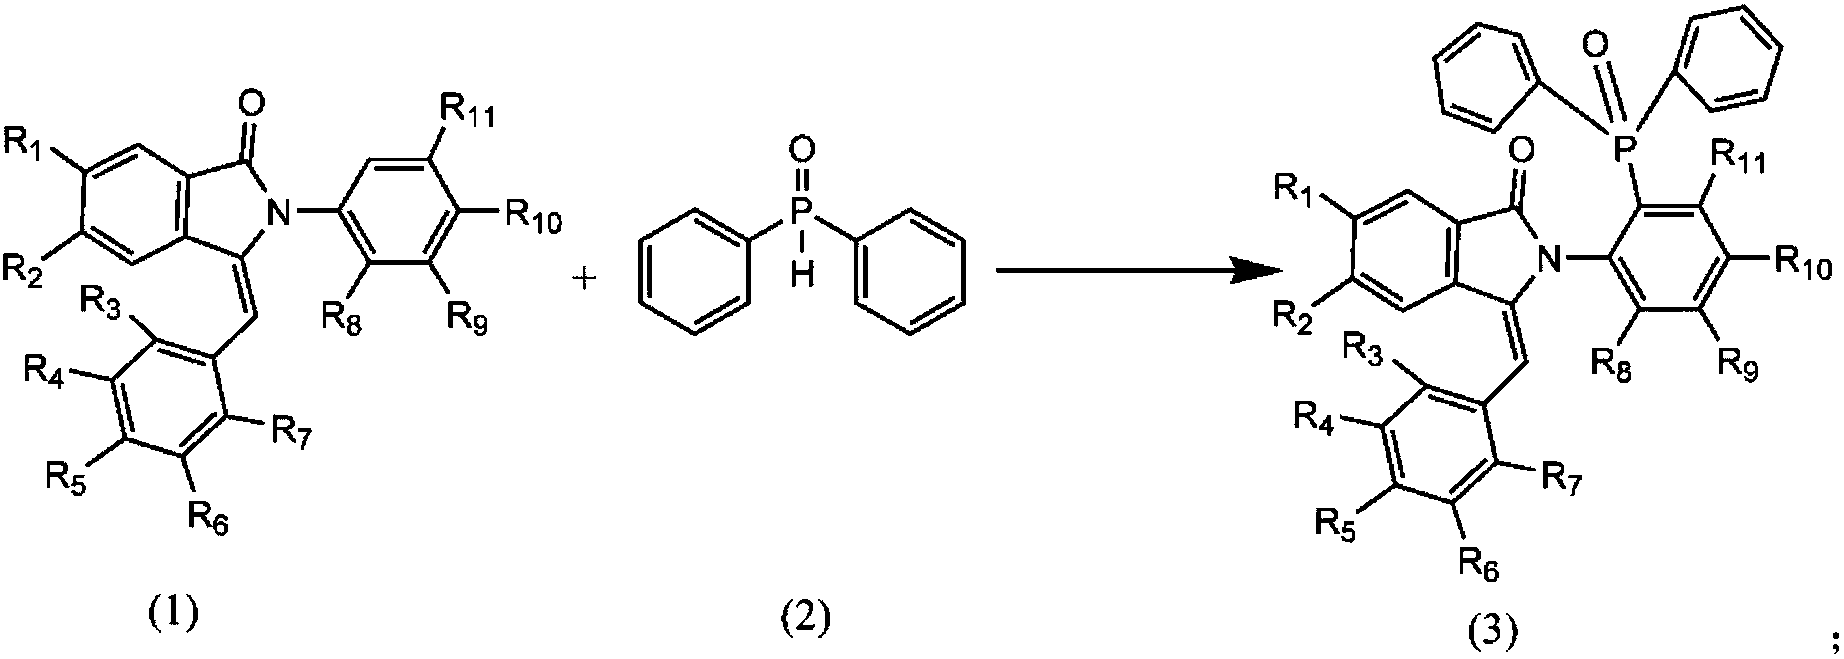 cn107383097a_n苯基3苯亚甲基异吲哚1酮的膦酰化衍生物的制备方法有效